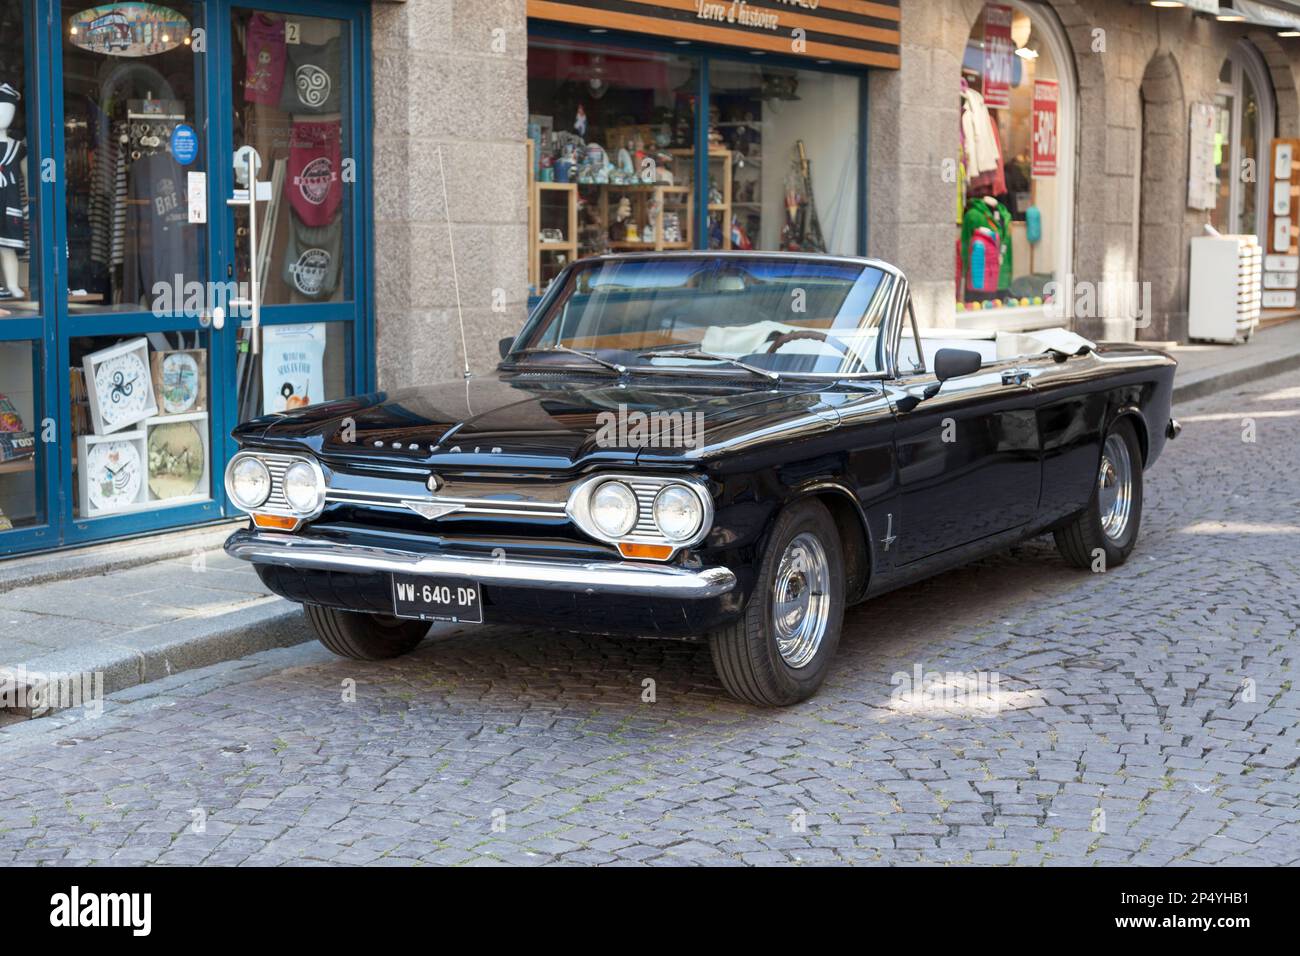 Saint-Malo, France - 02 juin 2020 : Cabriolet Corvair Monza 1964 de Chevrolet garée dans la rue. Banque D'Images